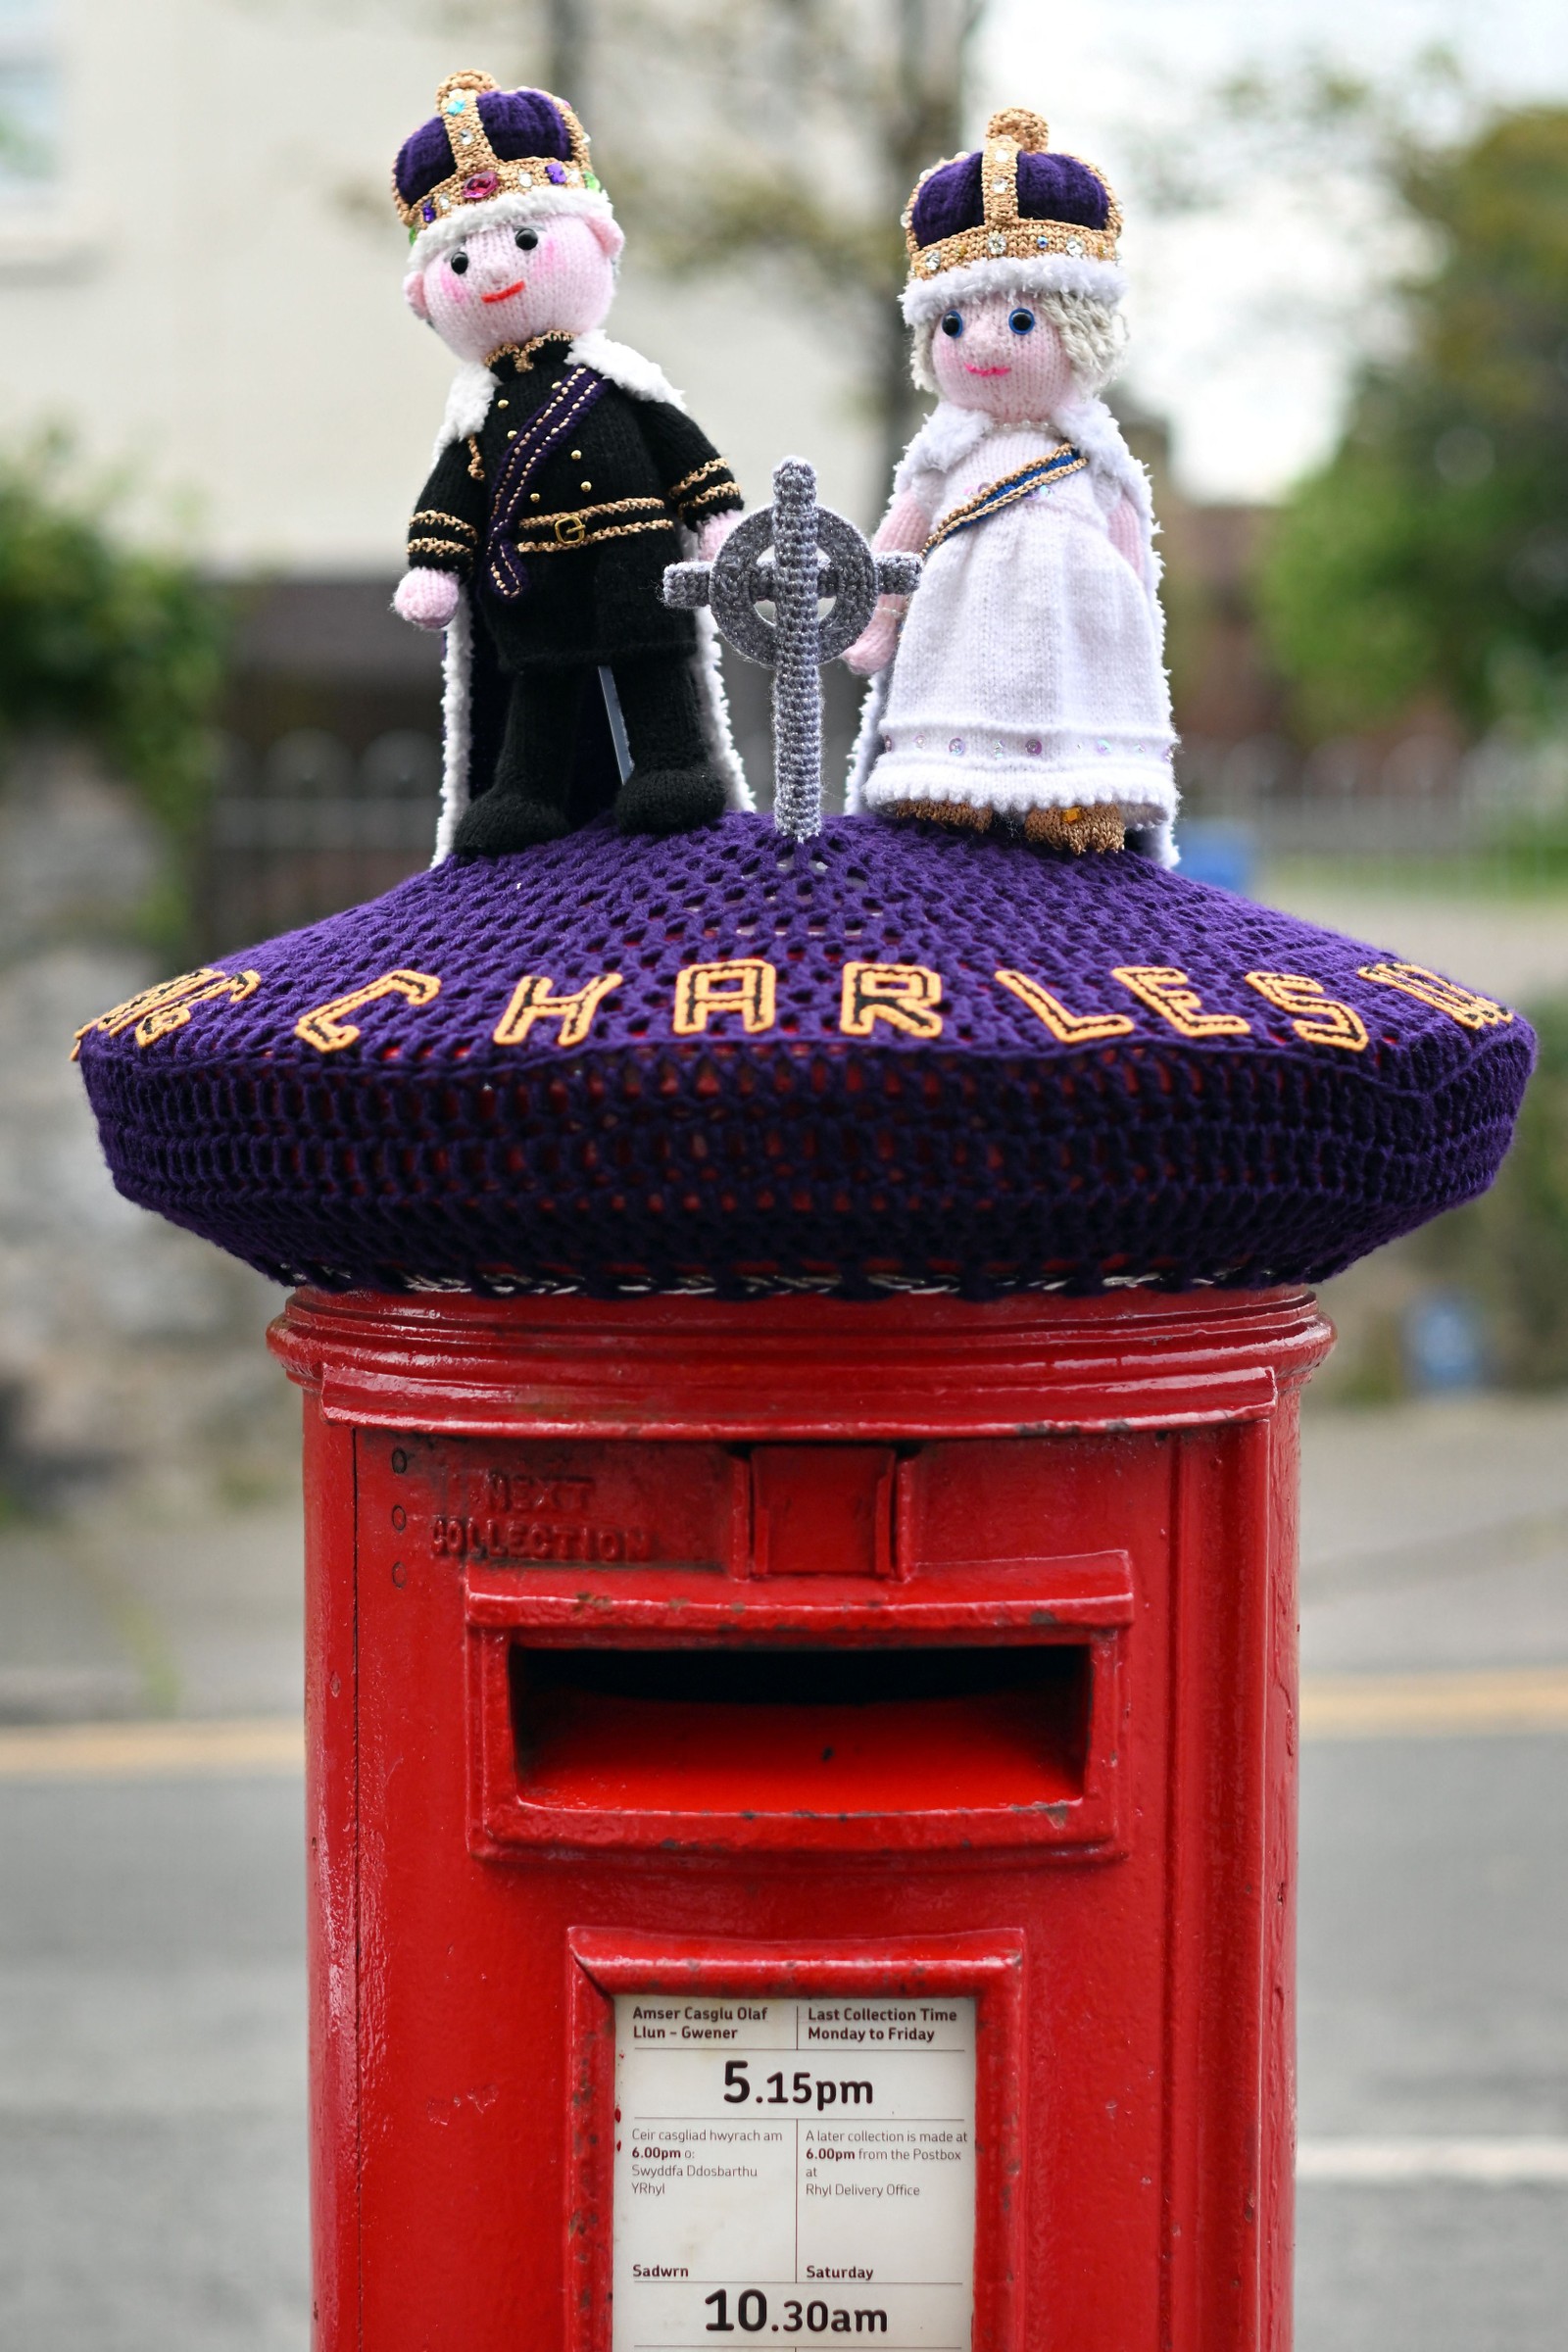 Uma caixa de correio decorada com um tricotado do rei britânico Charles III e da rainha Camilla, em Rhyl, norte do País de Gales — Foto: Paul ELLIS / AFP